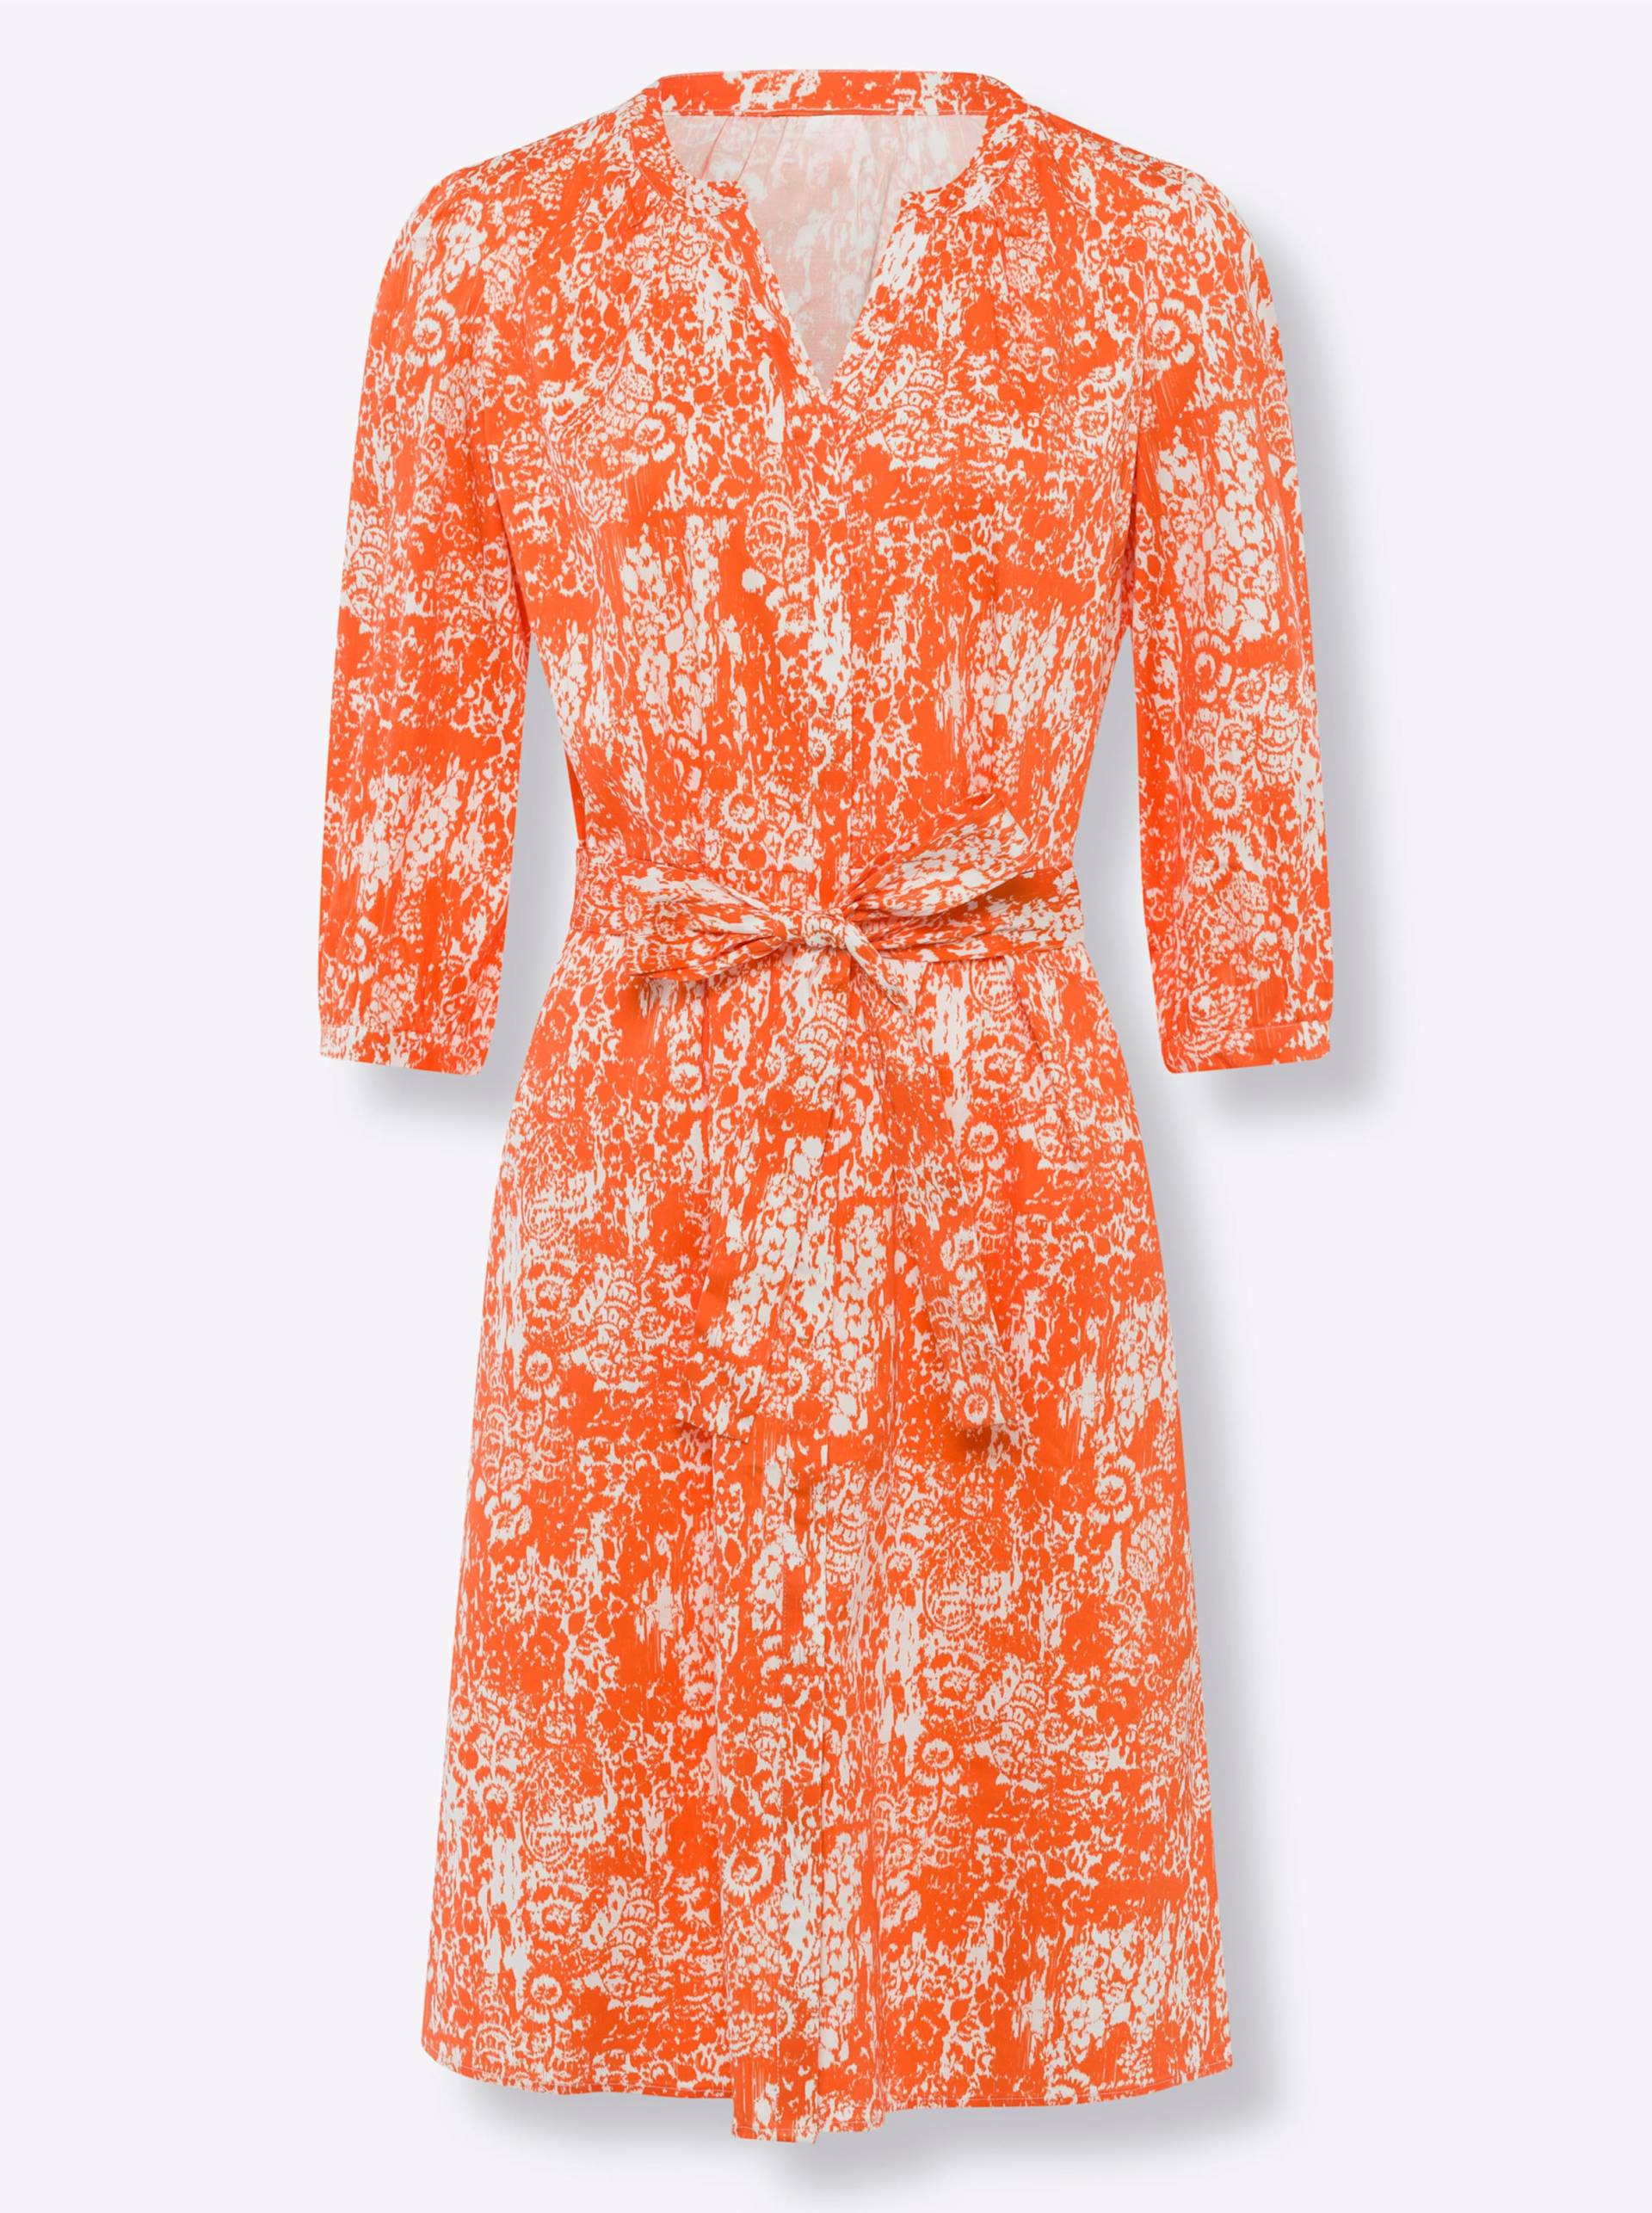 Druck-Kleid in orange-ecru-bedruckt von heine